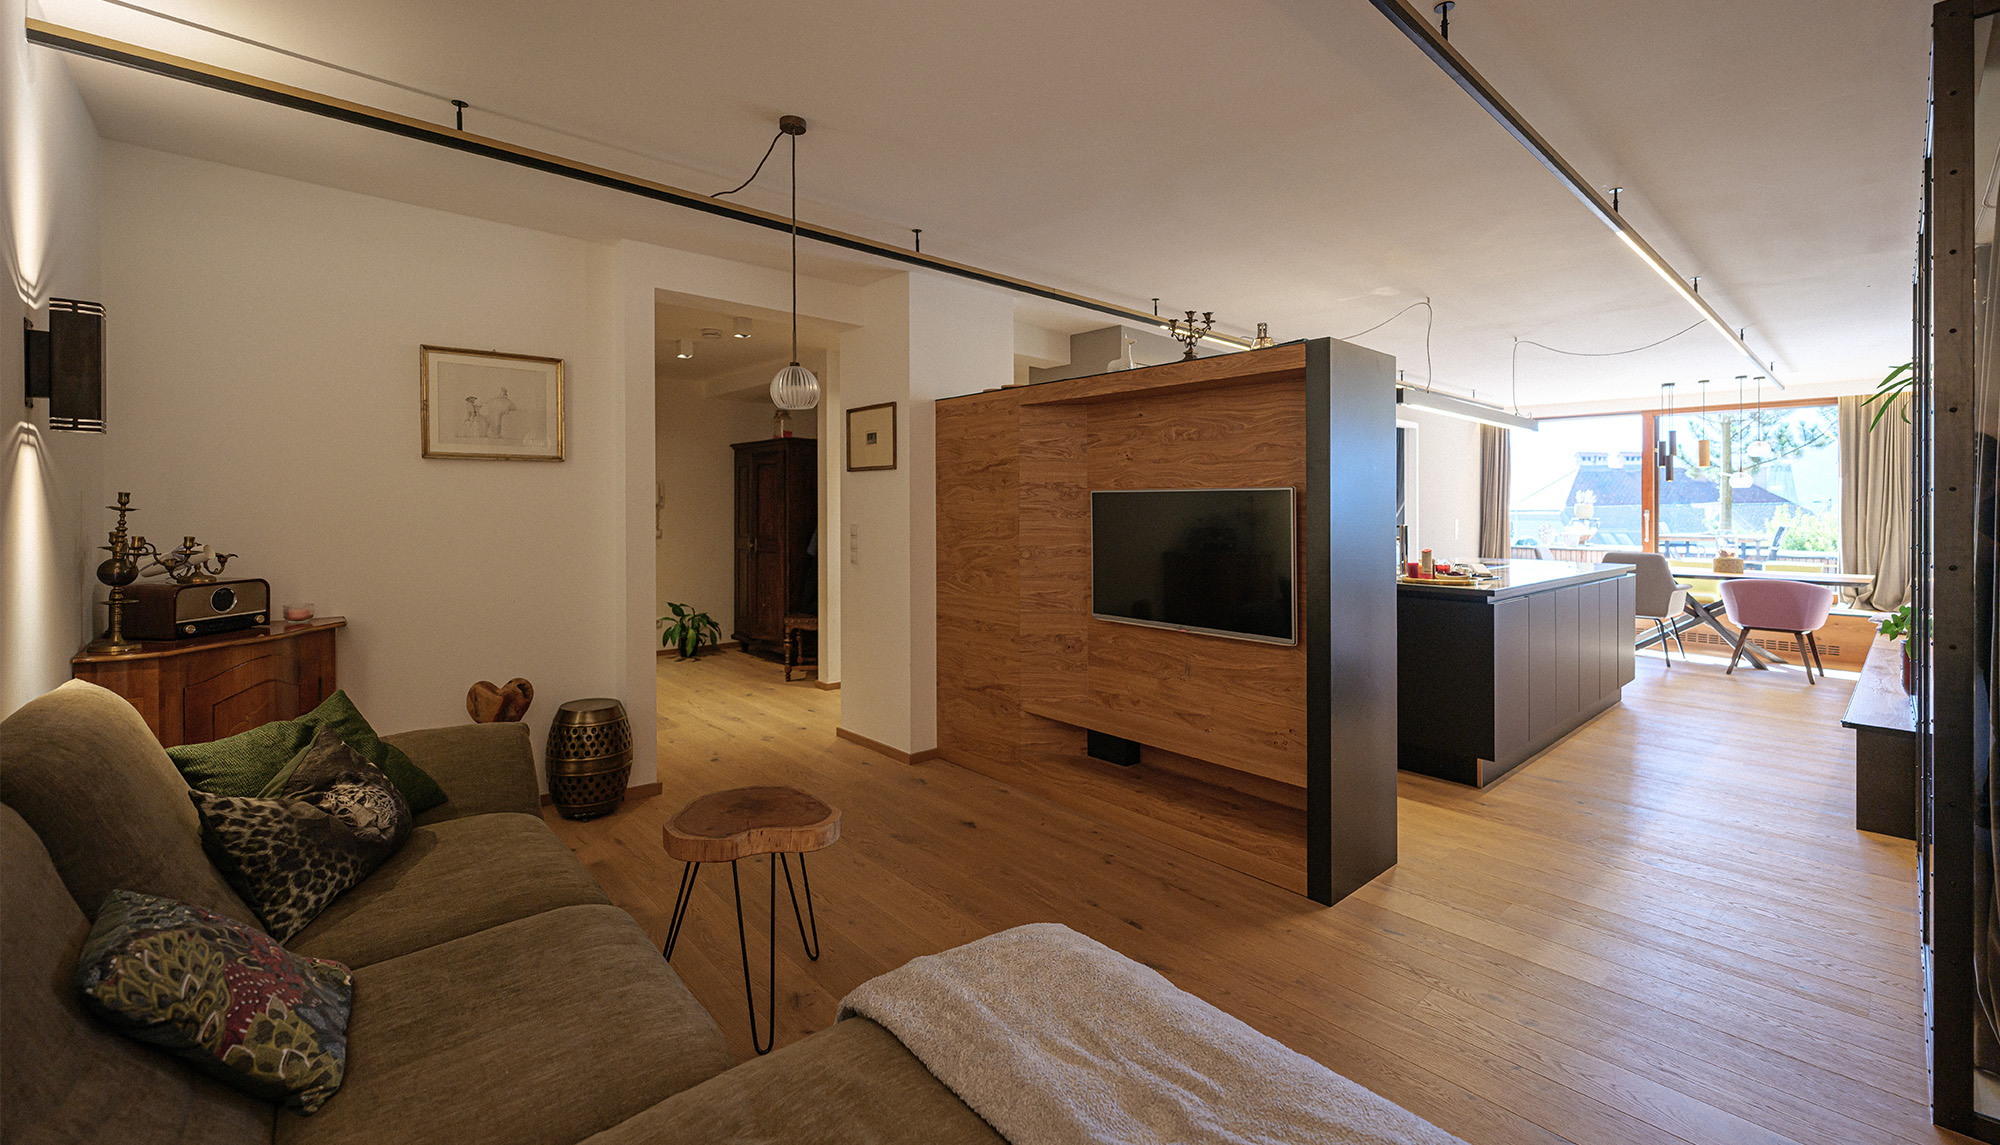 Innenraumdesign | Tischlermöbel | Holz